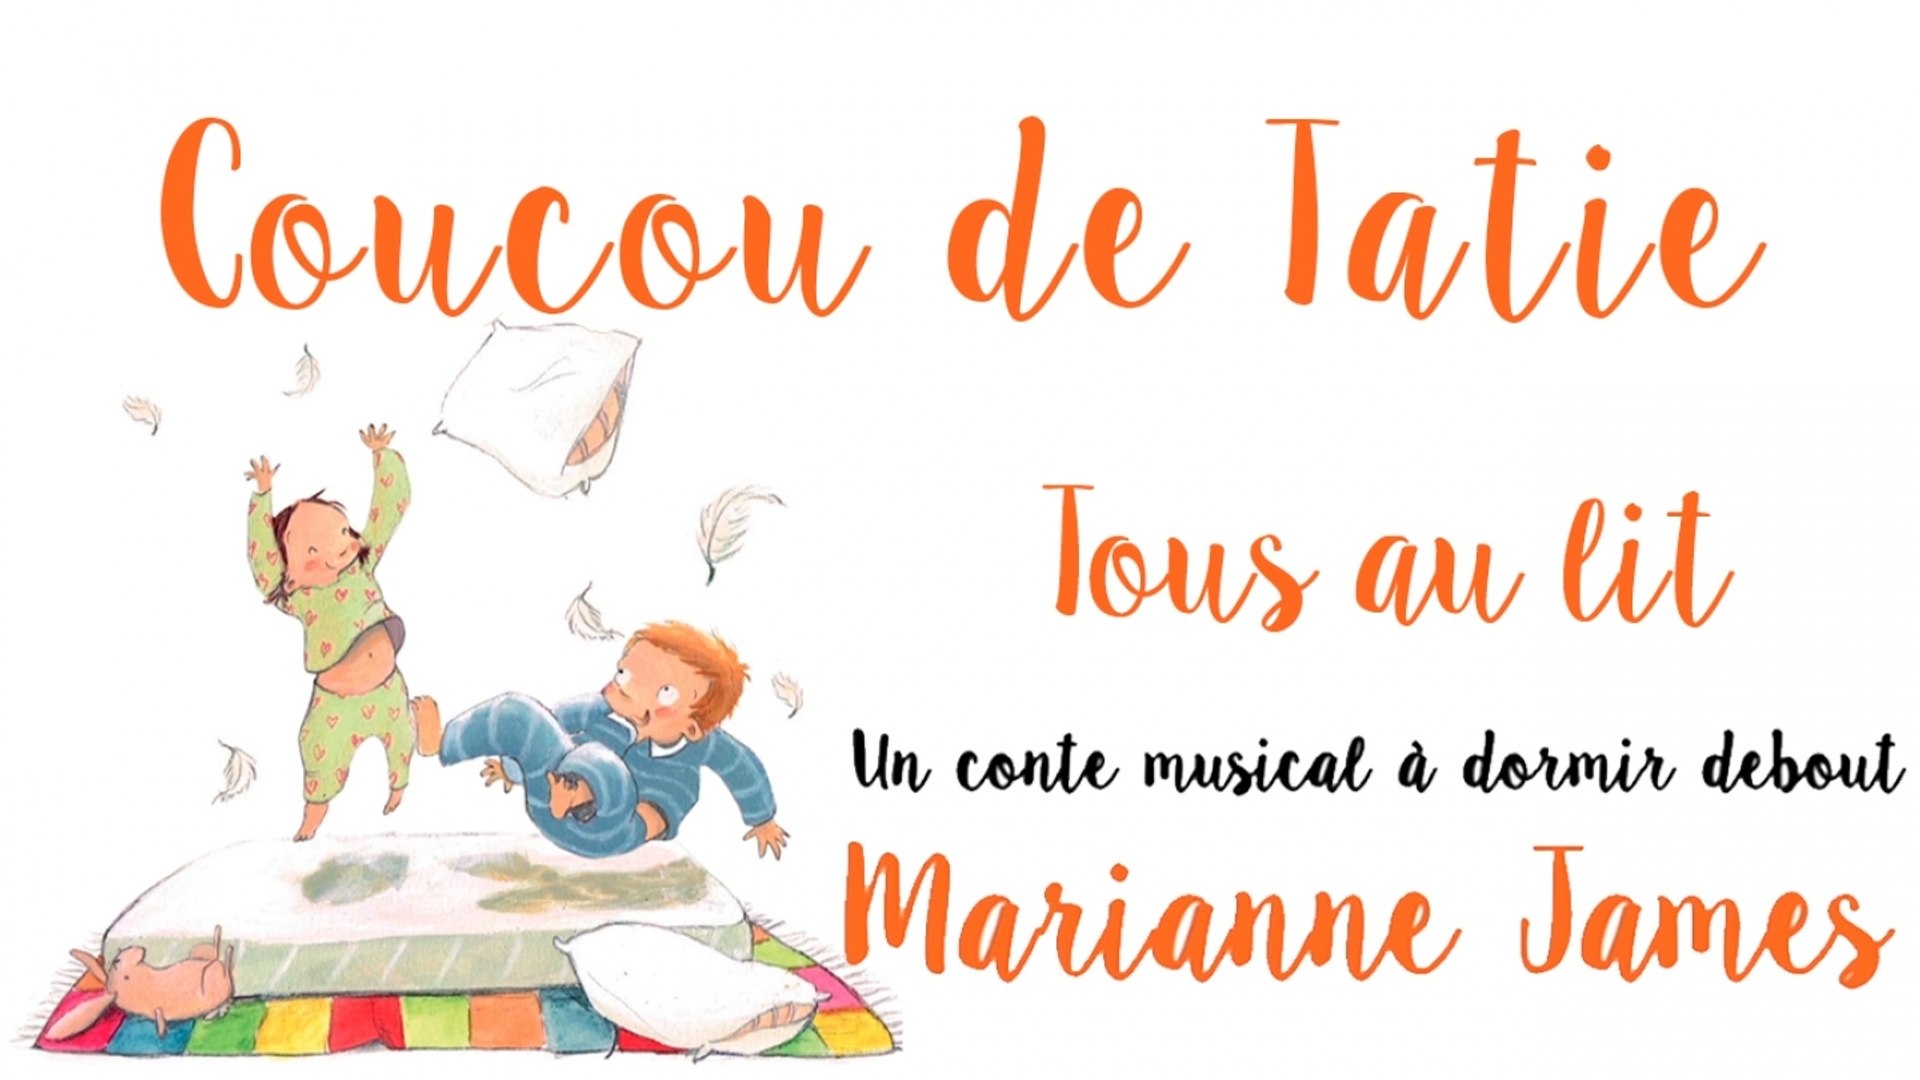 MARIANNE JAMES - Coucou de Tatie - conte musical "Tous au lit" - Vidéo  Dailymotion